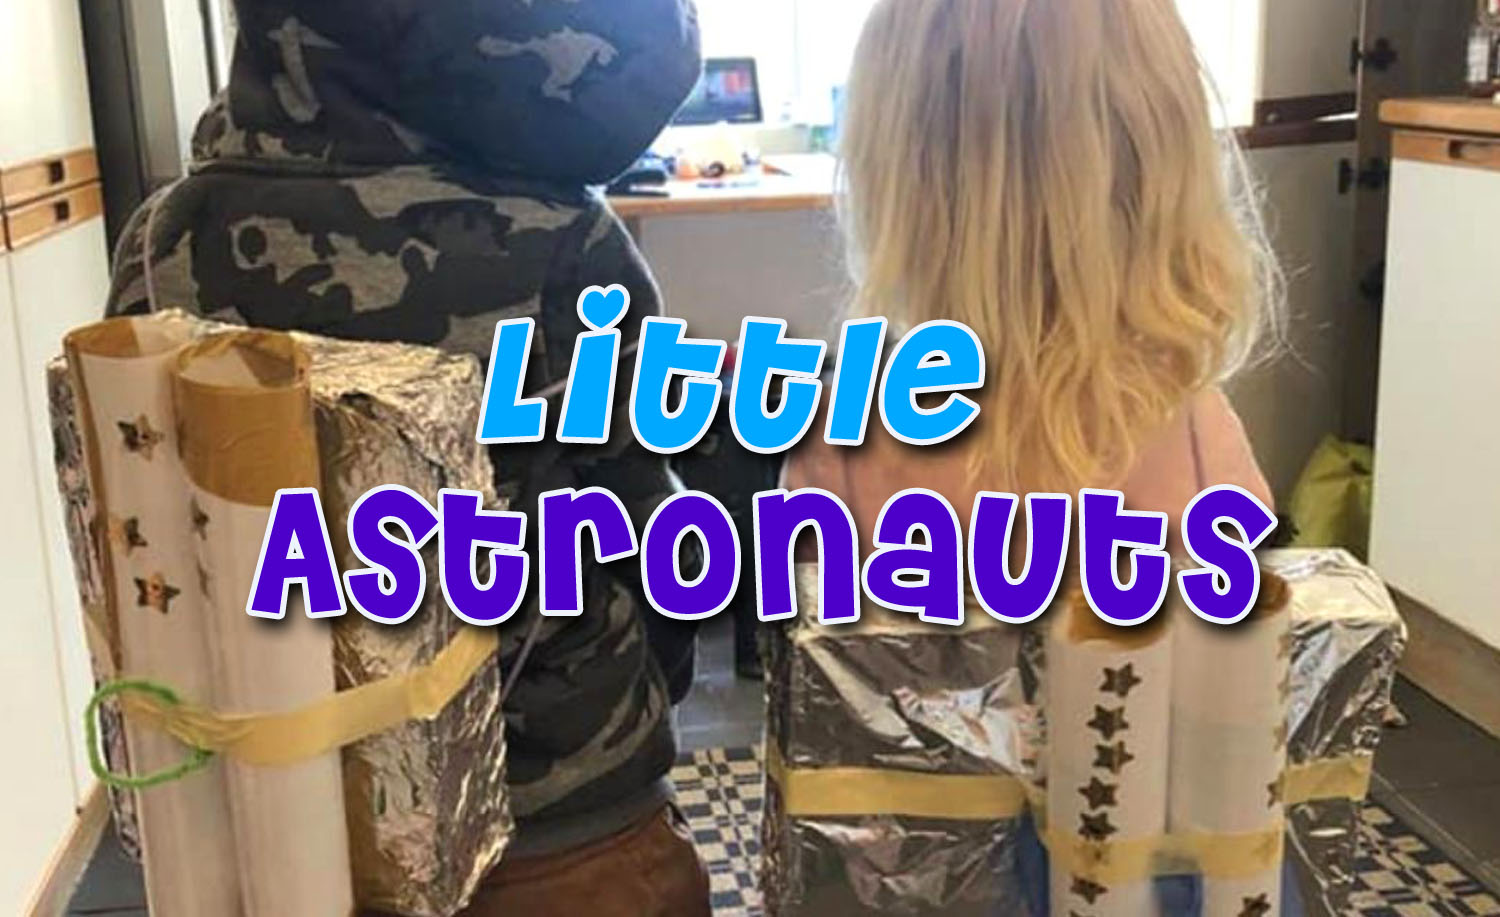 Two children in DIY astronaut packs